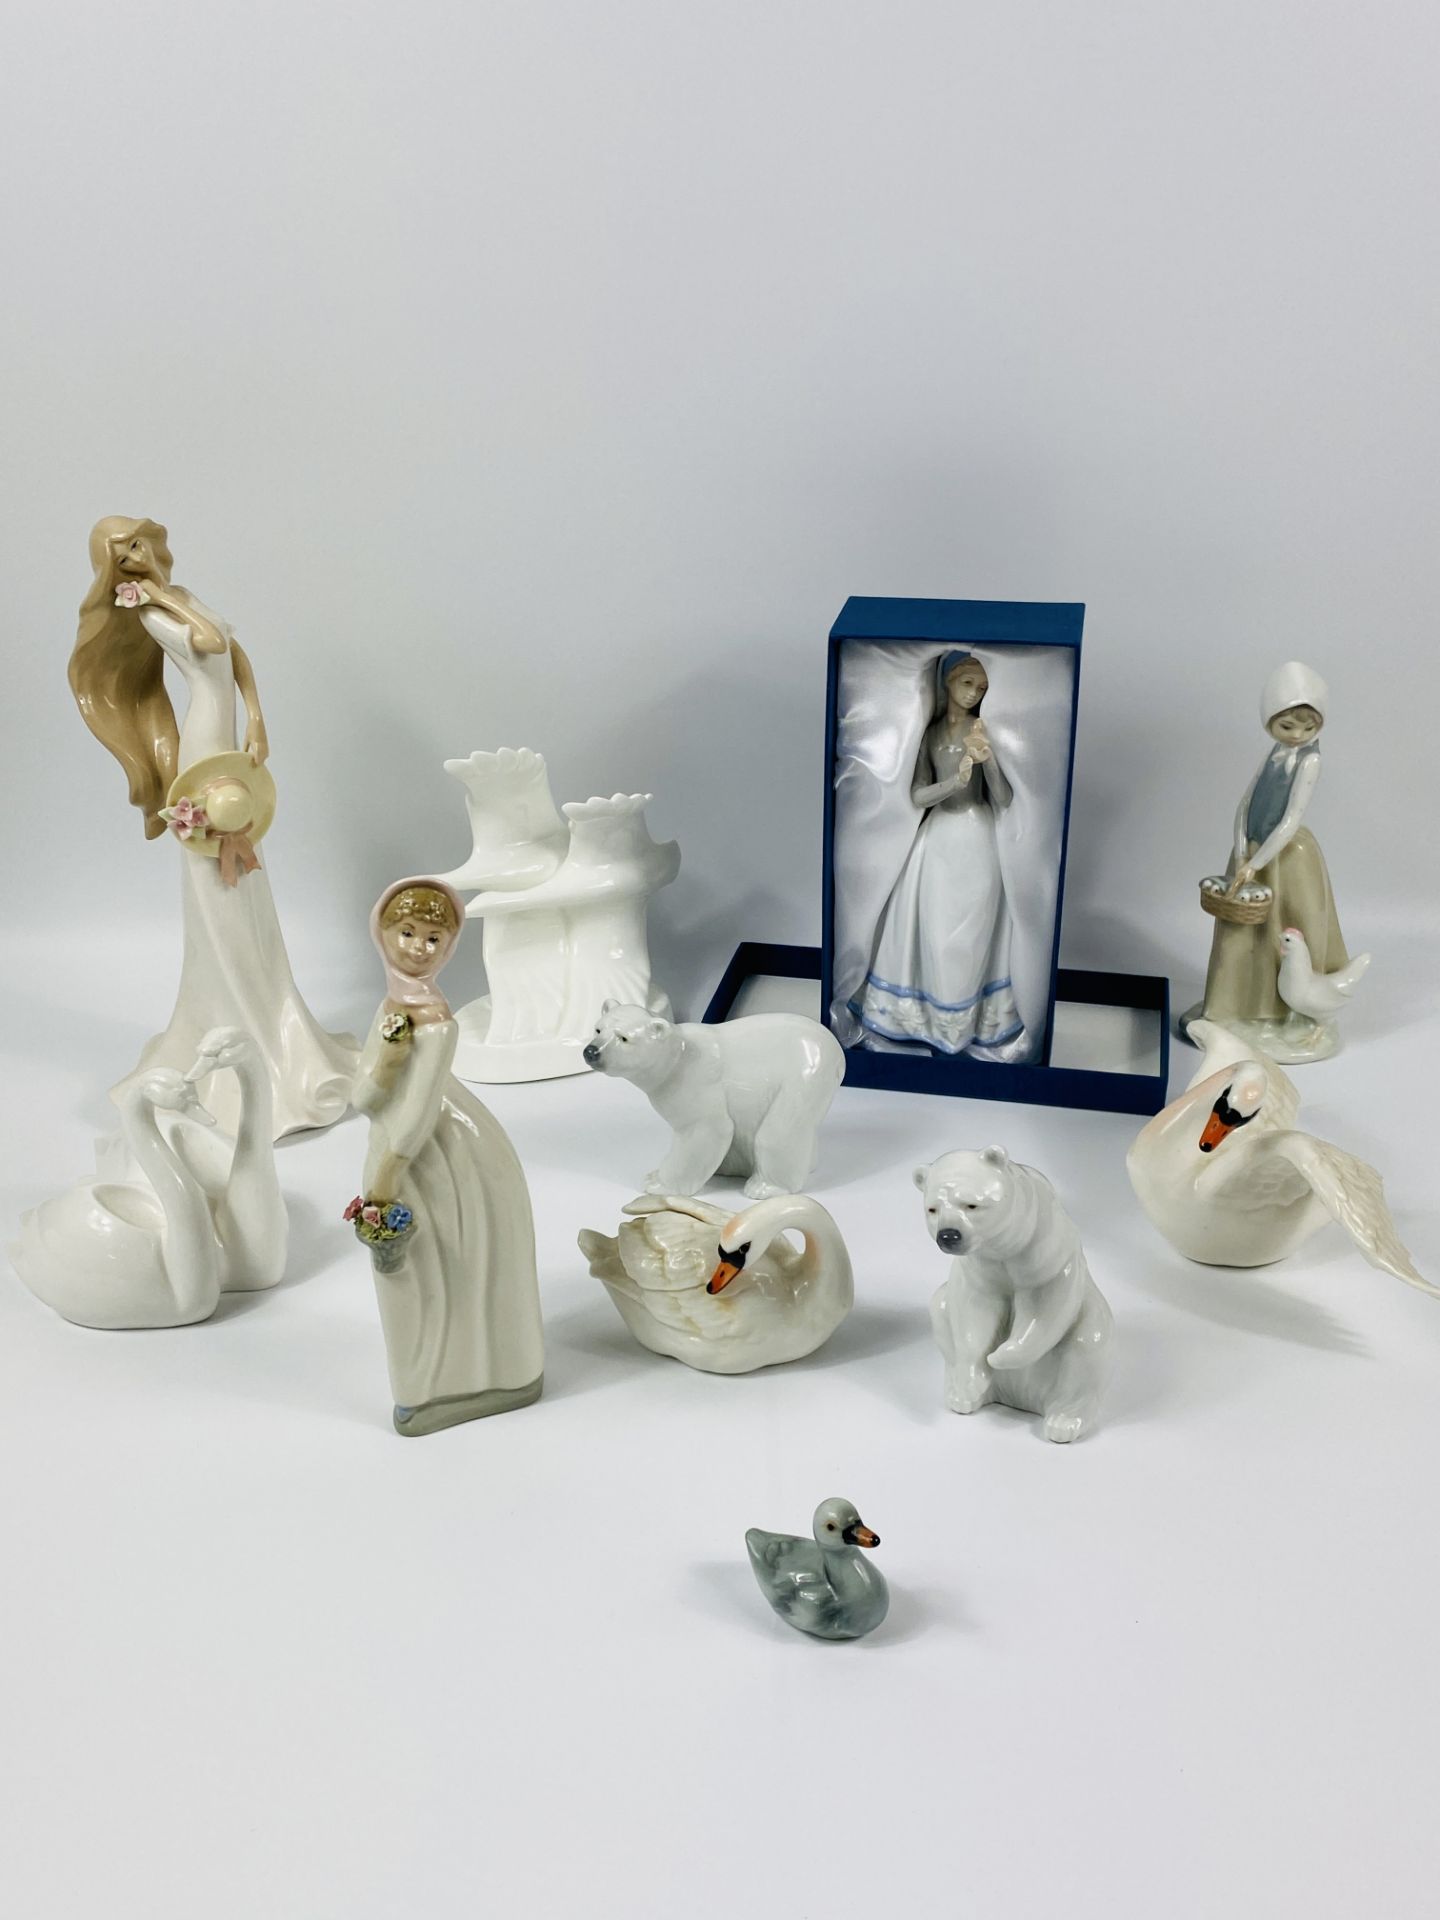 Quantity of ceramic figurines